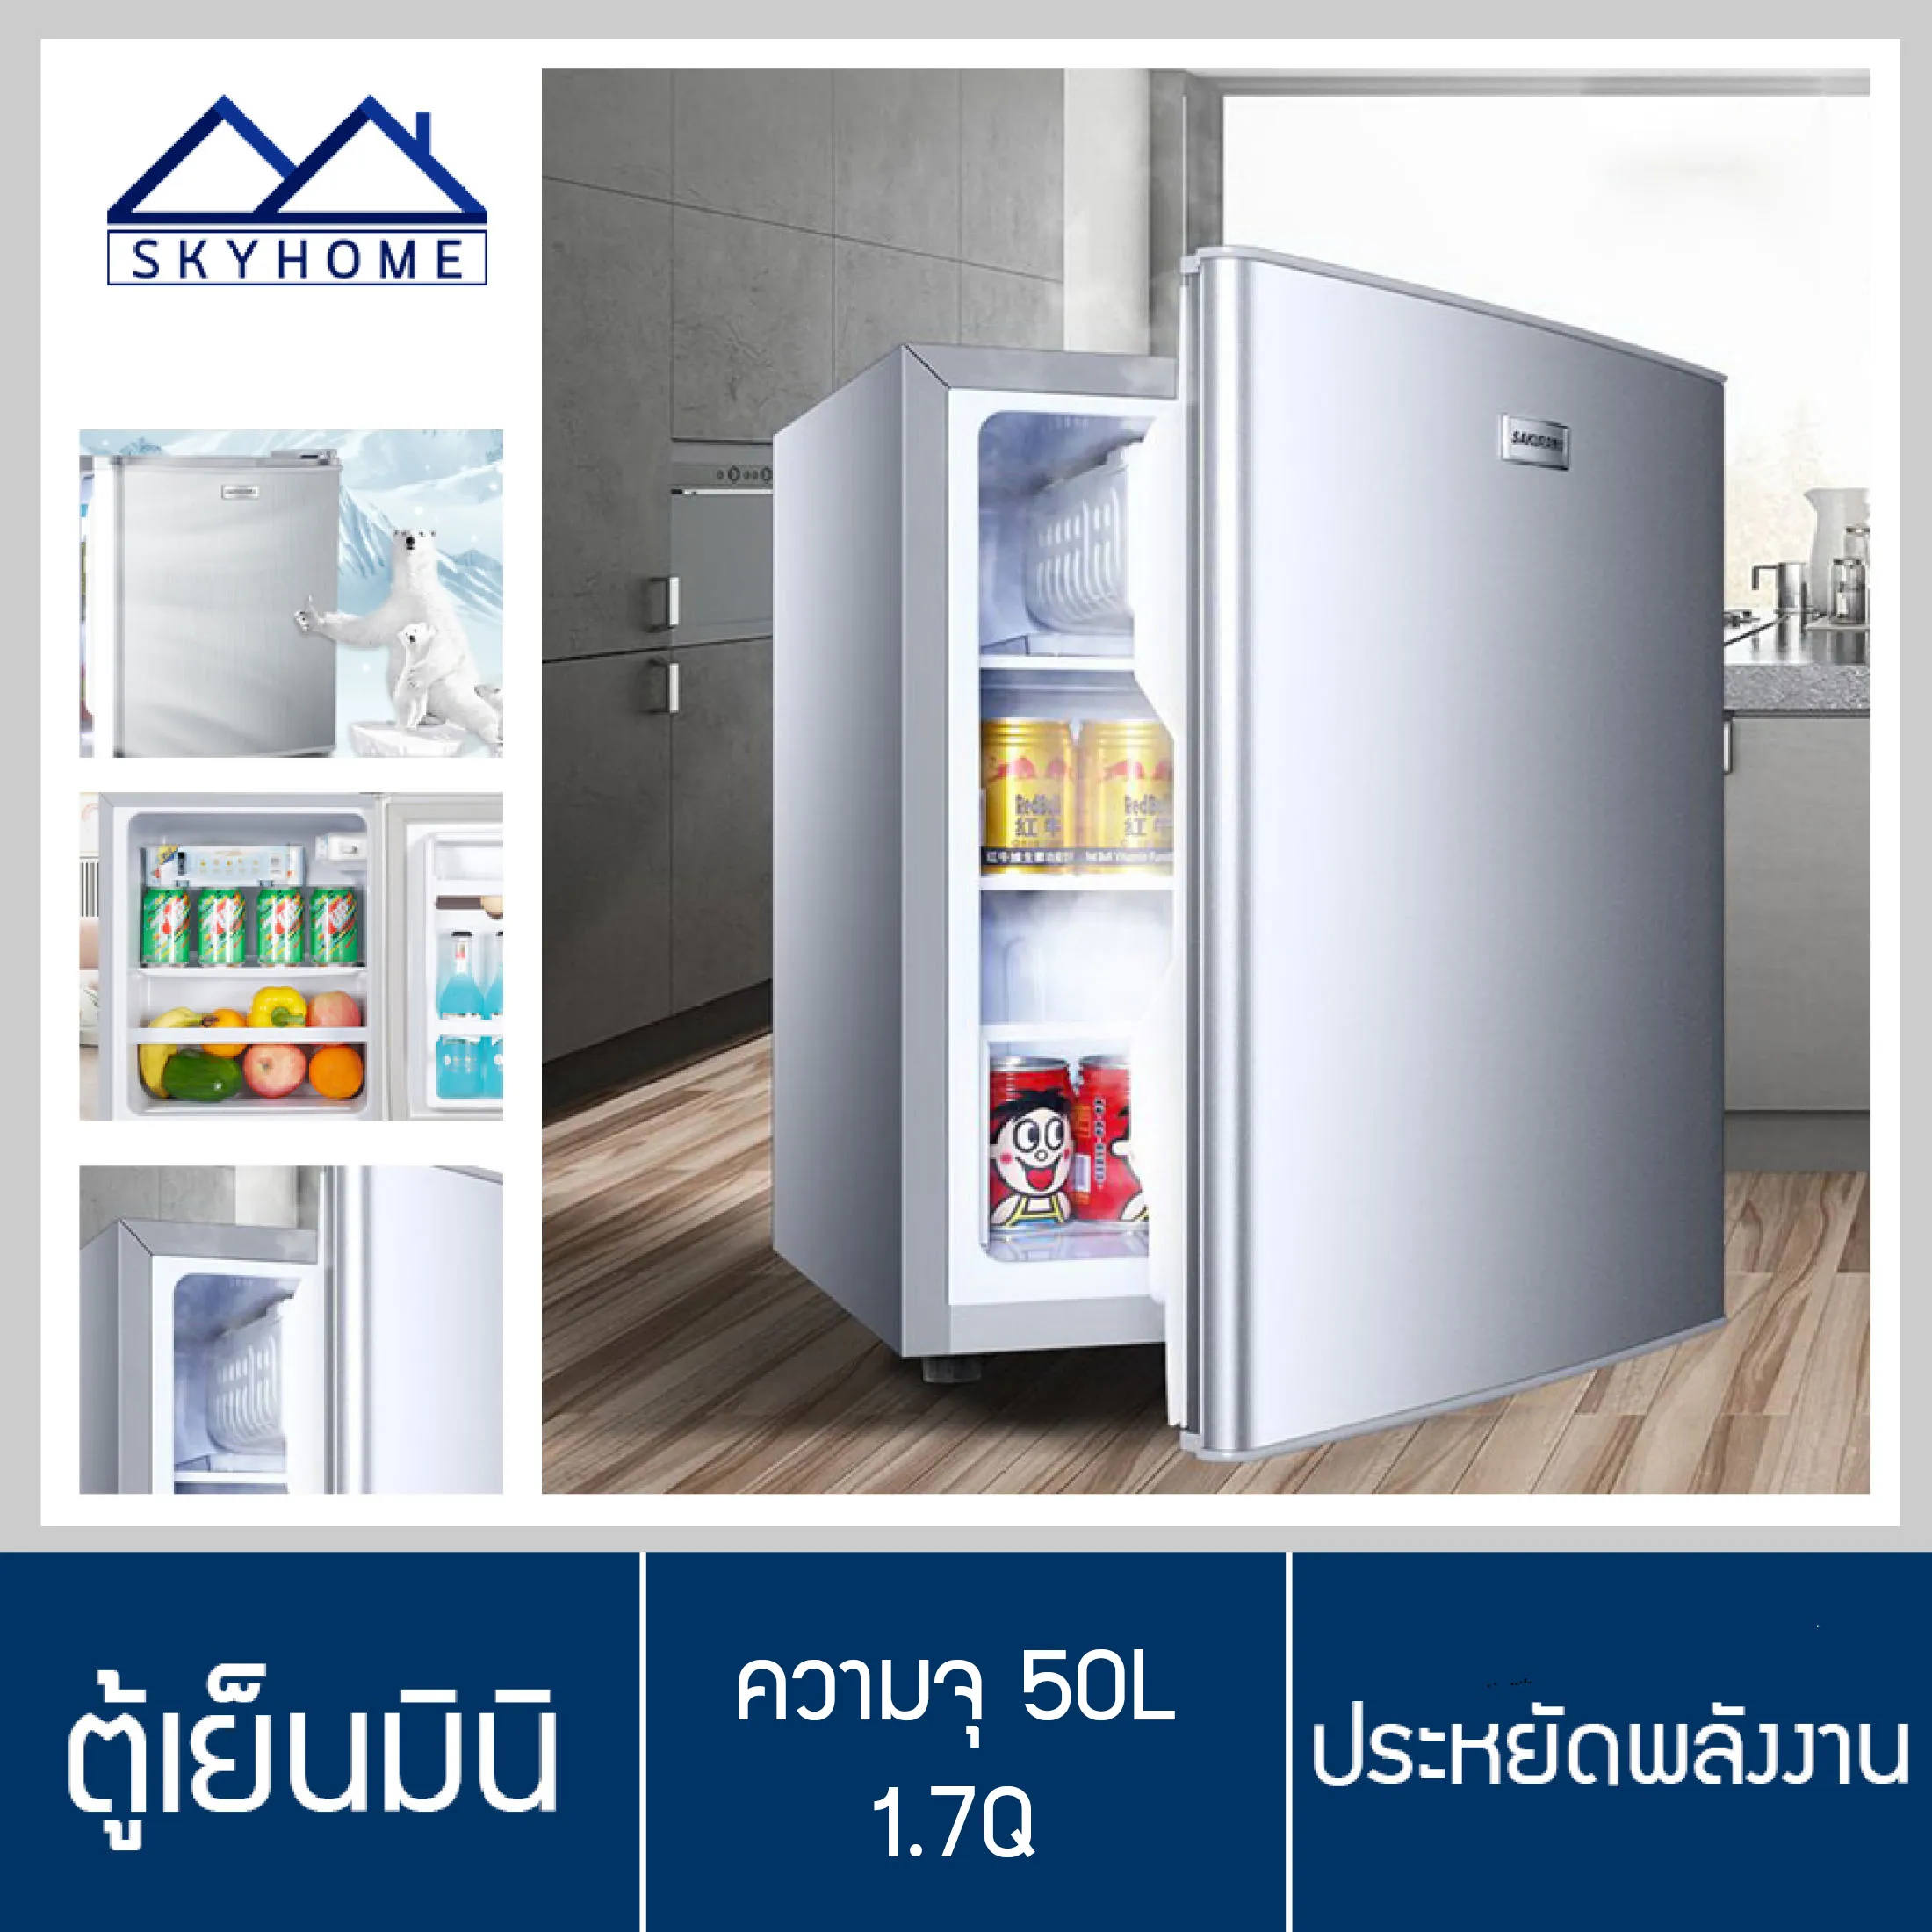 ตู้เย็น ตู้เย็นมินิ ตู้เย็นขนาดเล็ก ตู้เย็นมินิบาร์ refrigerator ตู้เย็นเดี่ยว 1 ประตู ความจุ 50L 1.7Q ประหยัดไฟ ขนาด 38.5x40.5x54.6 ซม. สีเงิน Skyhome